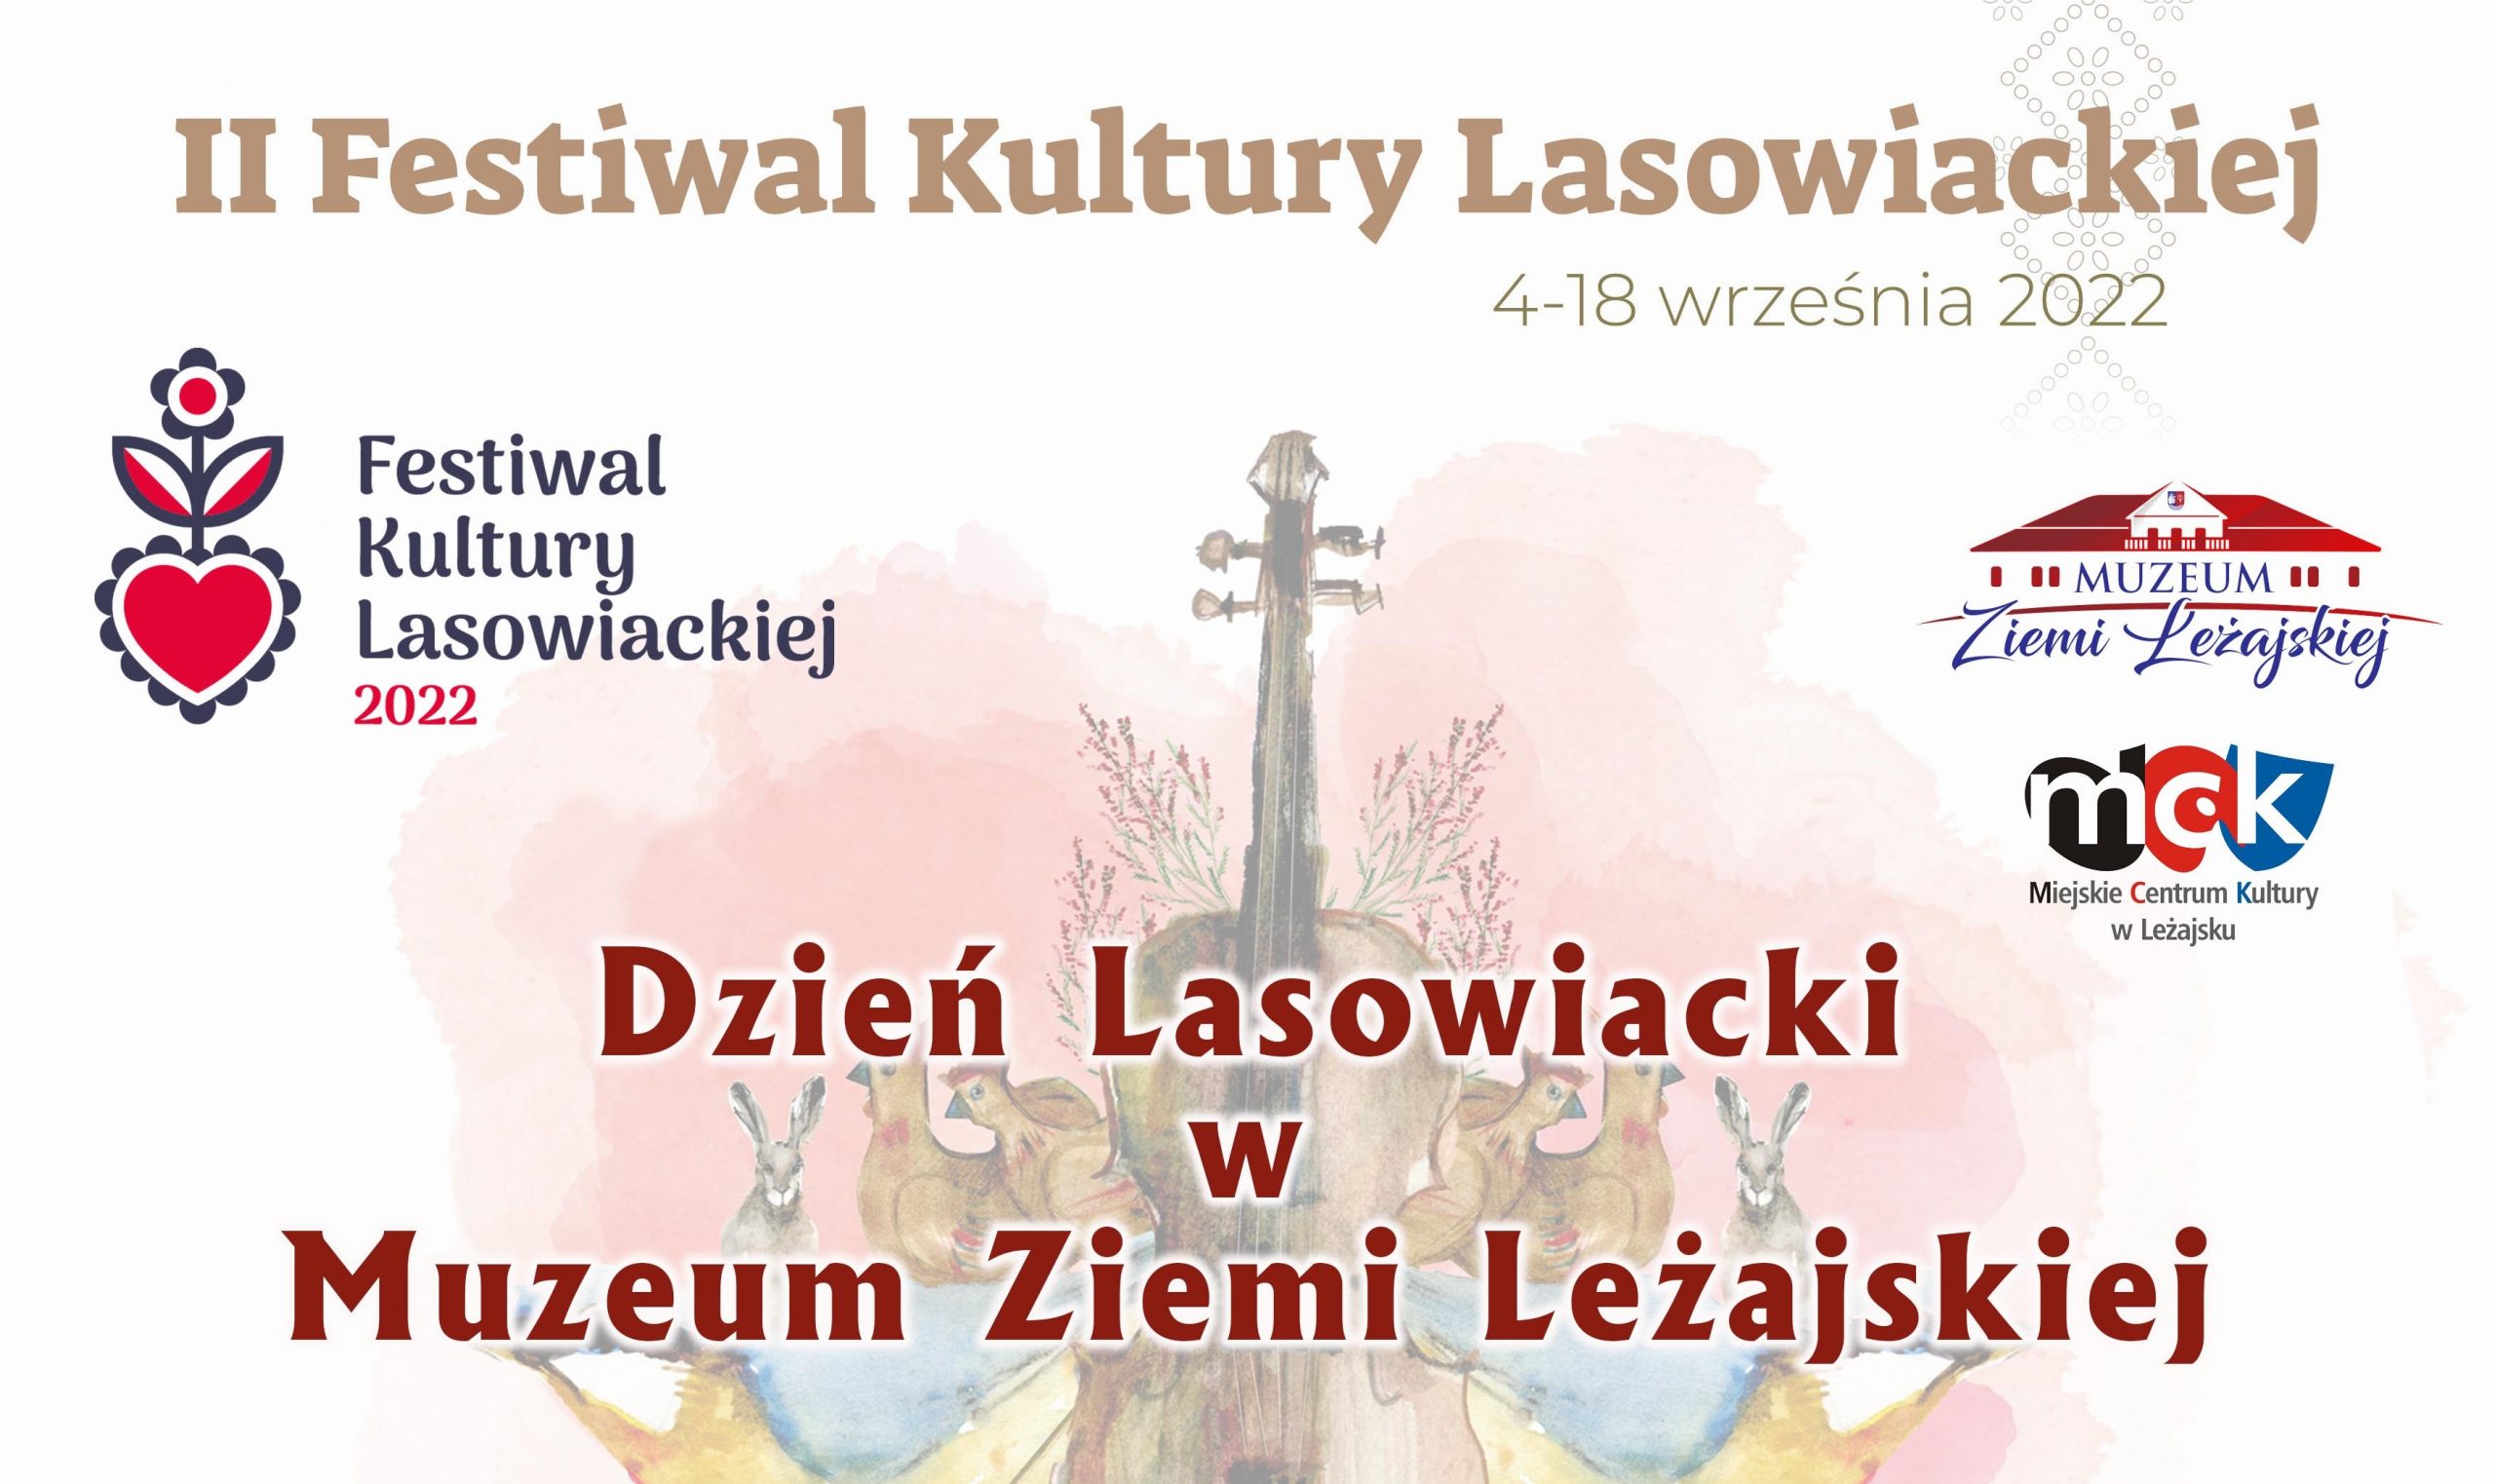 II Festiwal Kultury Lasowiackiej – Dzień Lasowiacki w Muzeum Ziemi Leżajskiej